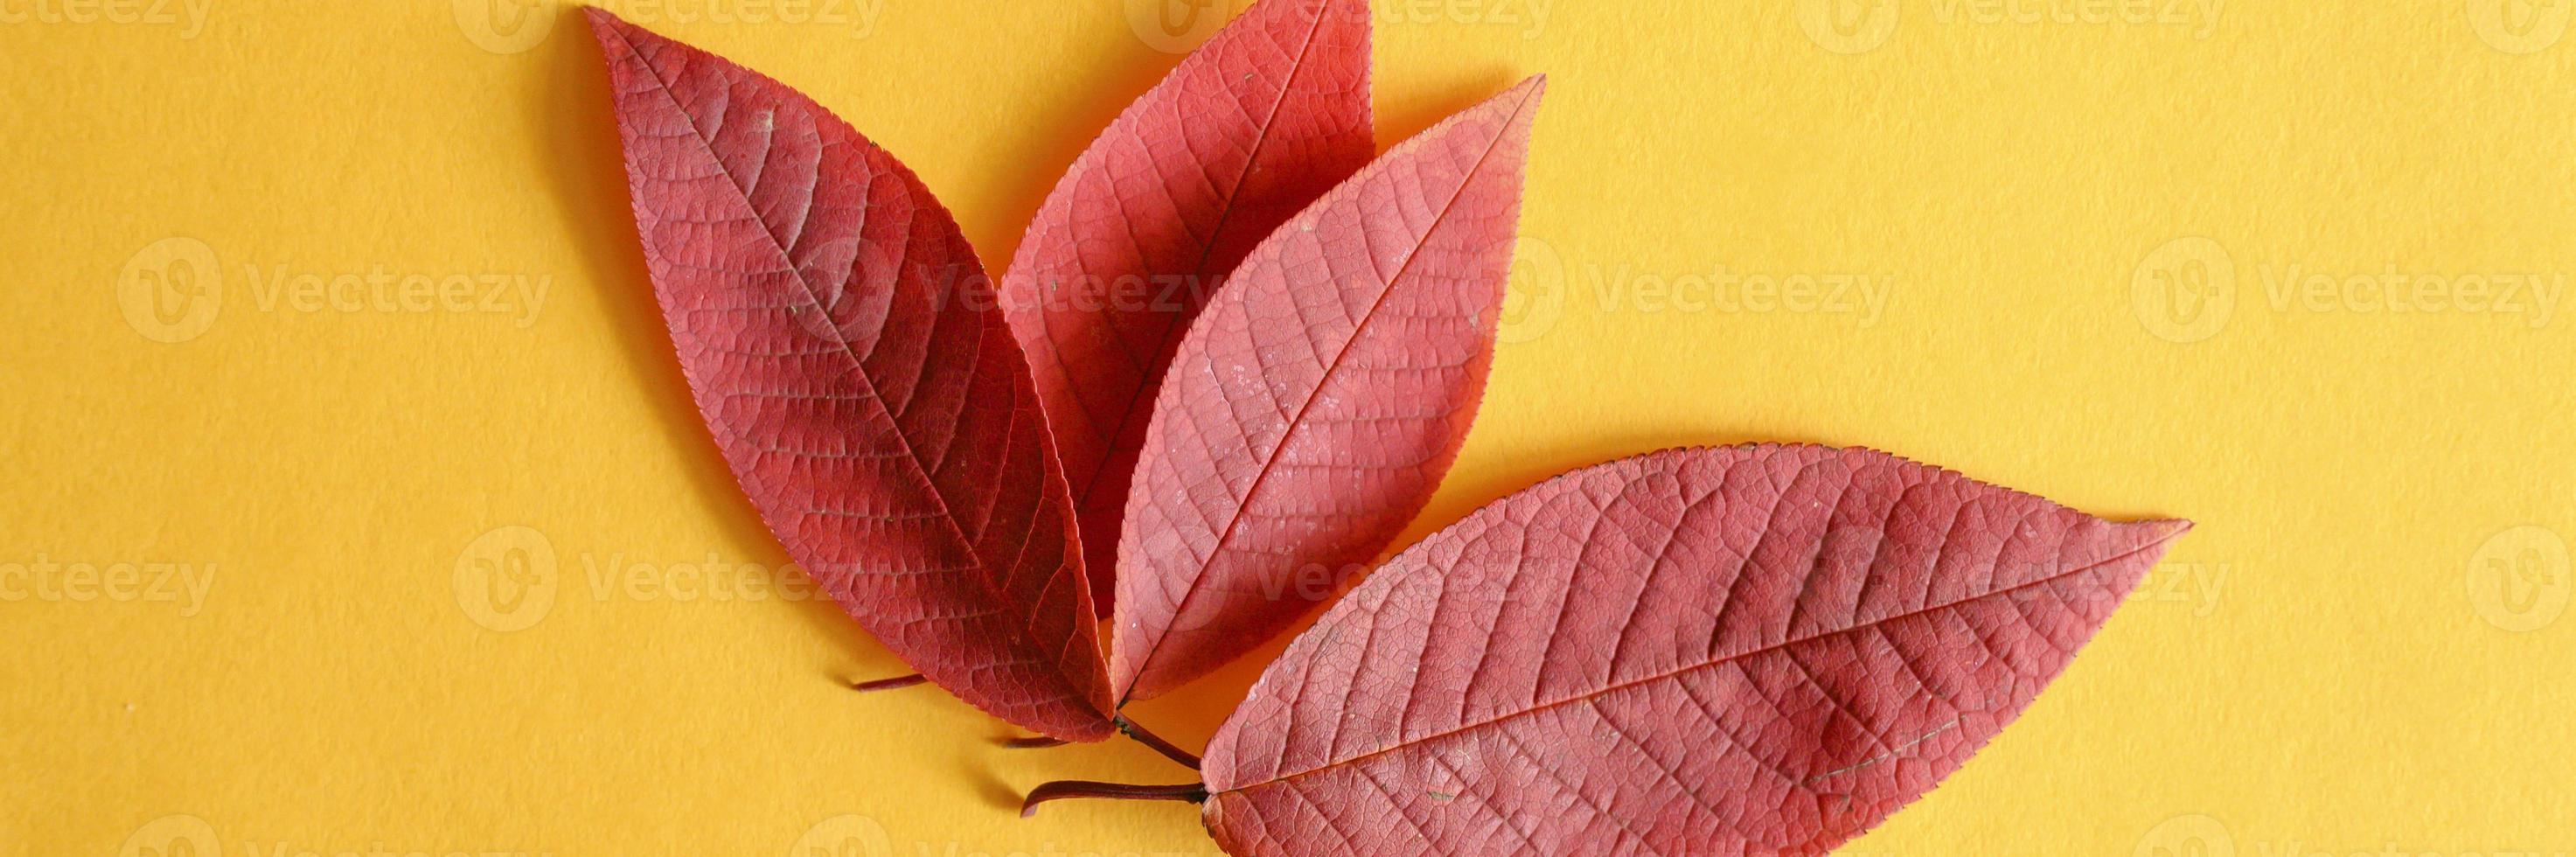 diverse foglie di ciliegio autunno rosso caduto su uno sfondo di carta gialla laici piatta foto